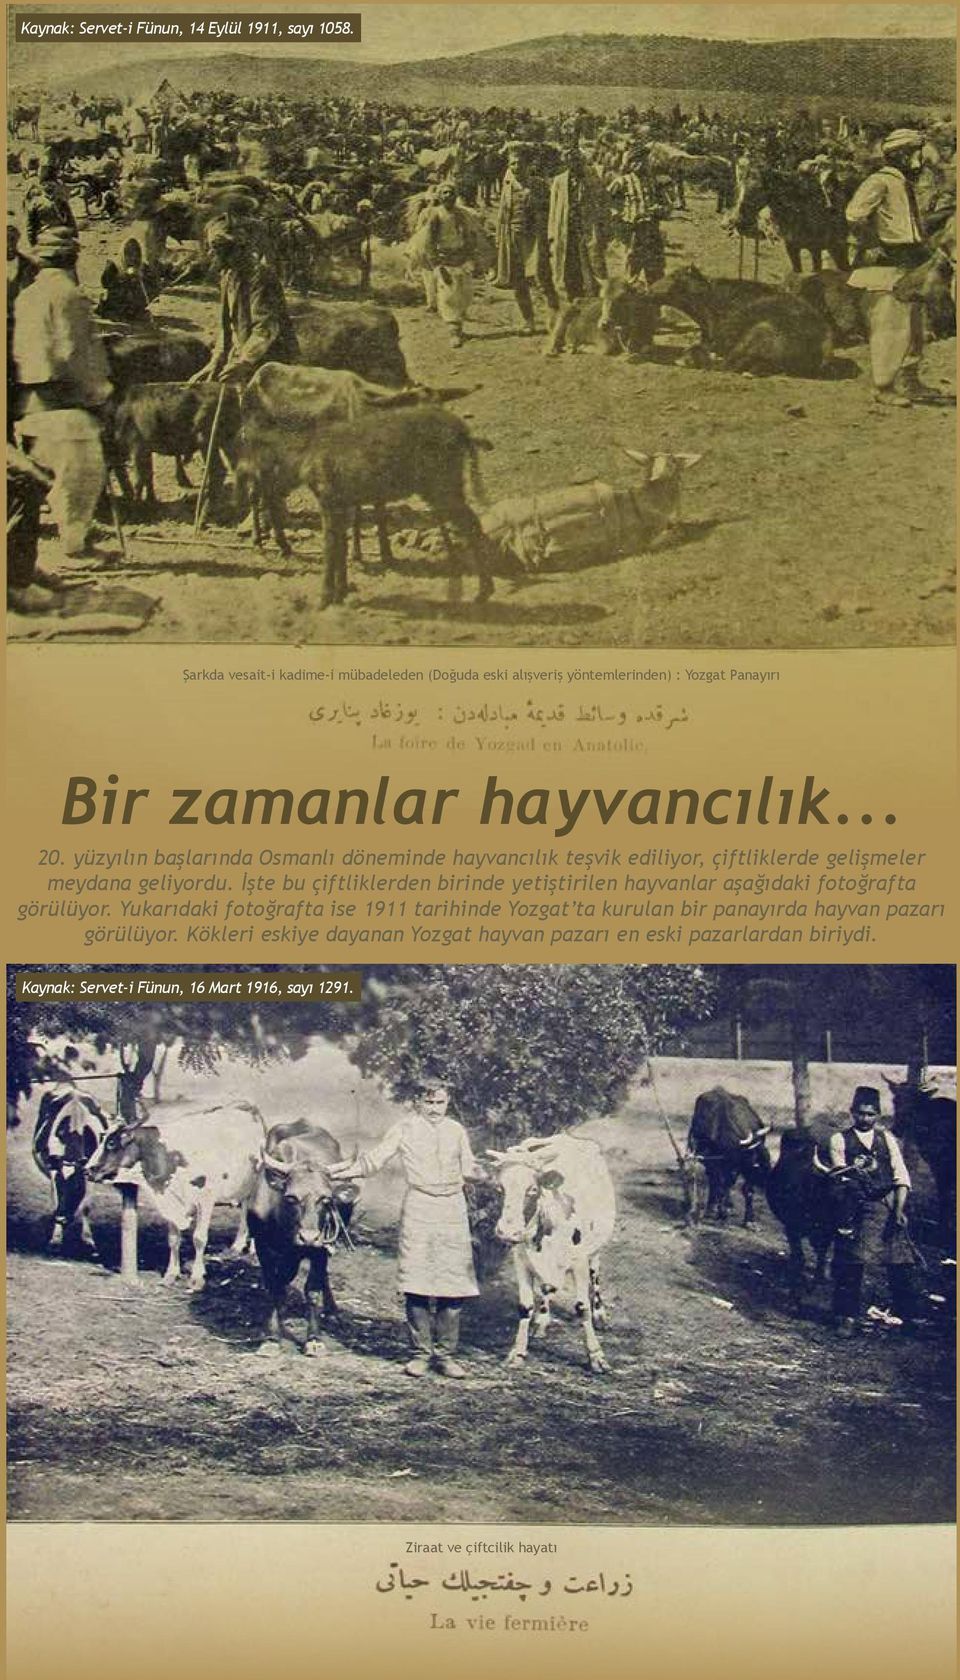 yüzyılın başlarında Osmanlı döneminde hayvancılık teşvik ediliyor, çiftliklerde gelişmeler meydana geliyordu.